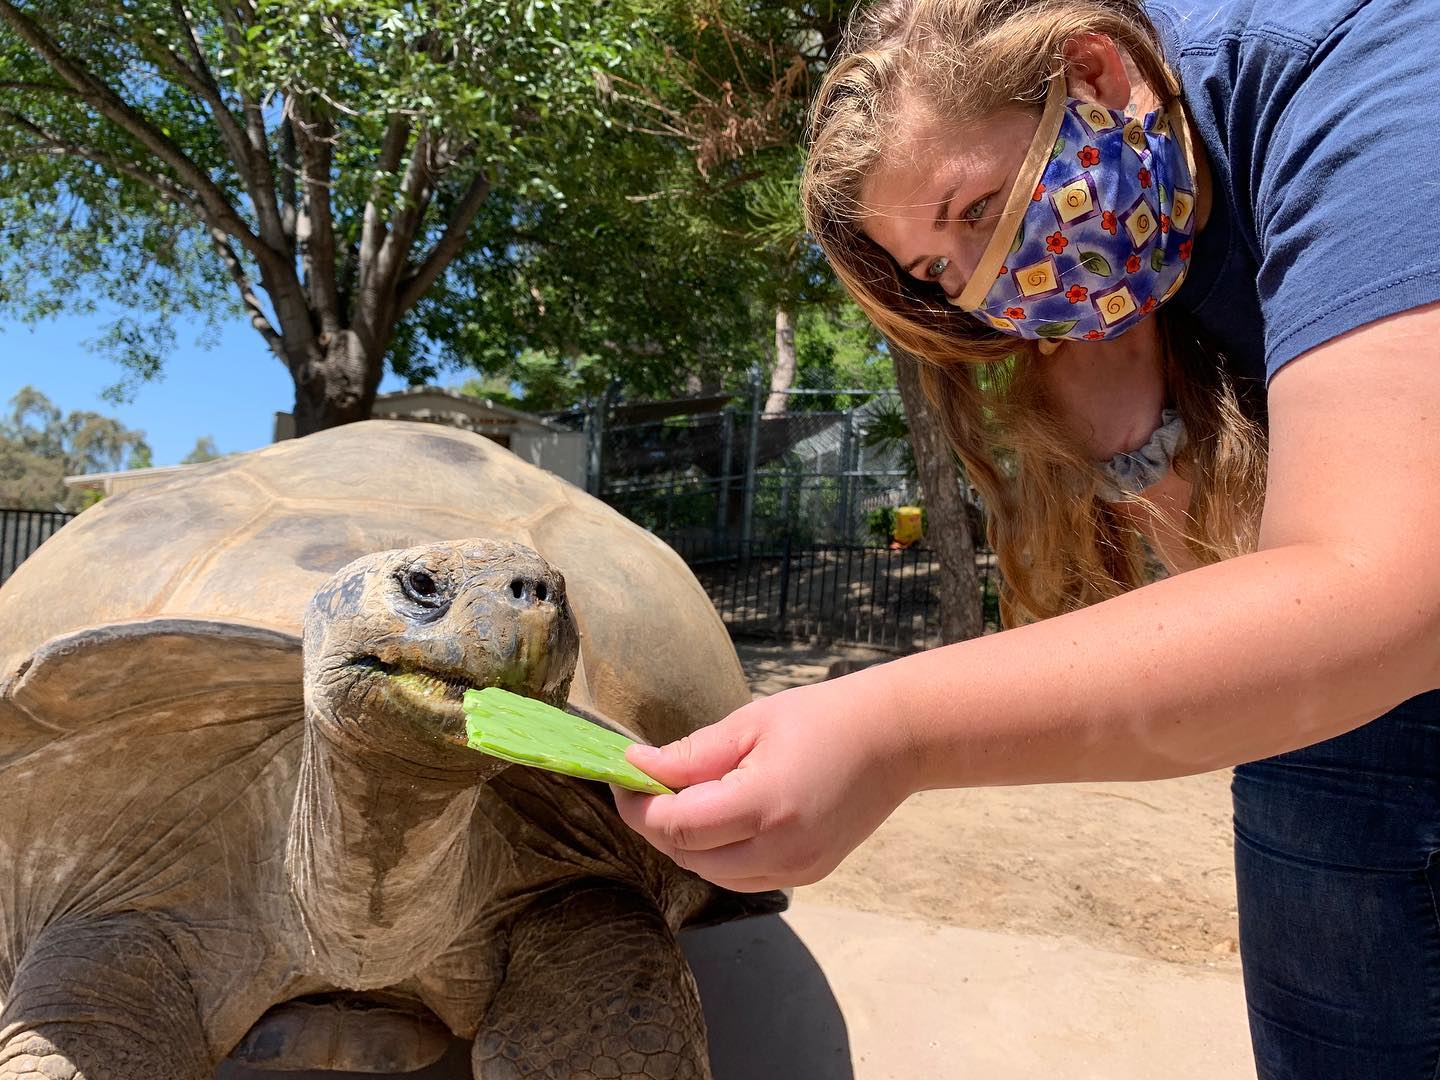 Feeding a tortoise